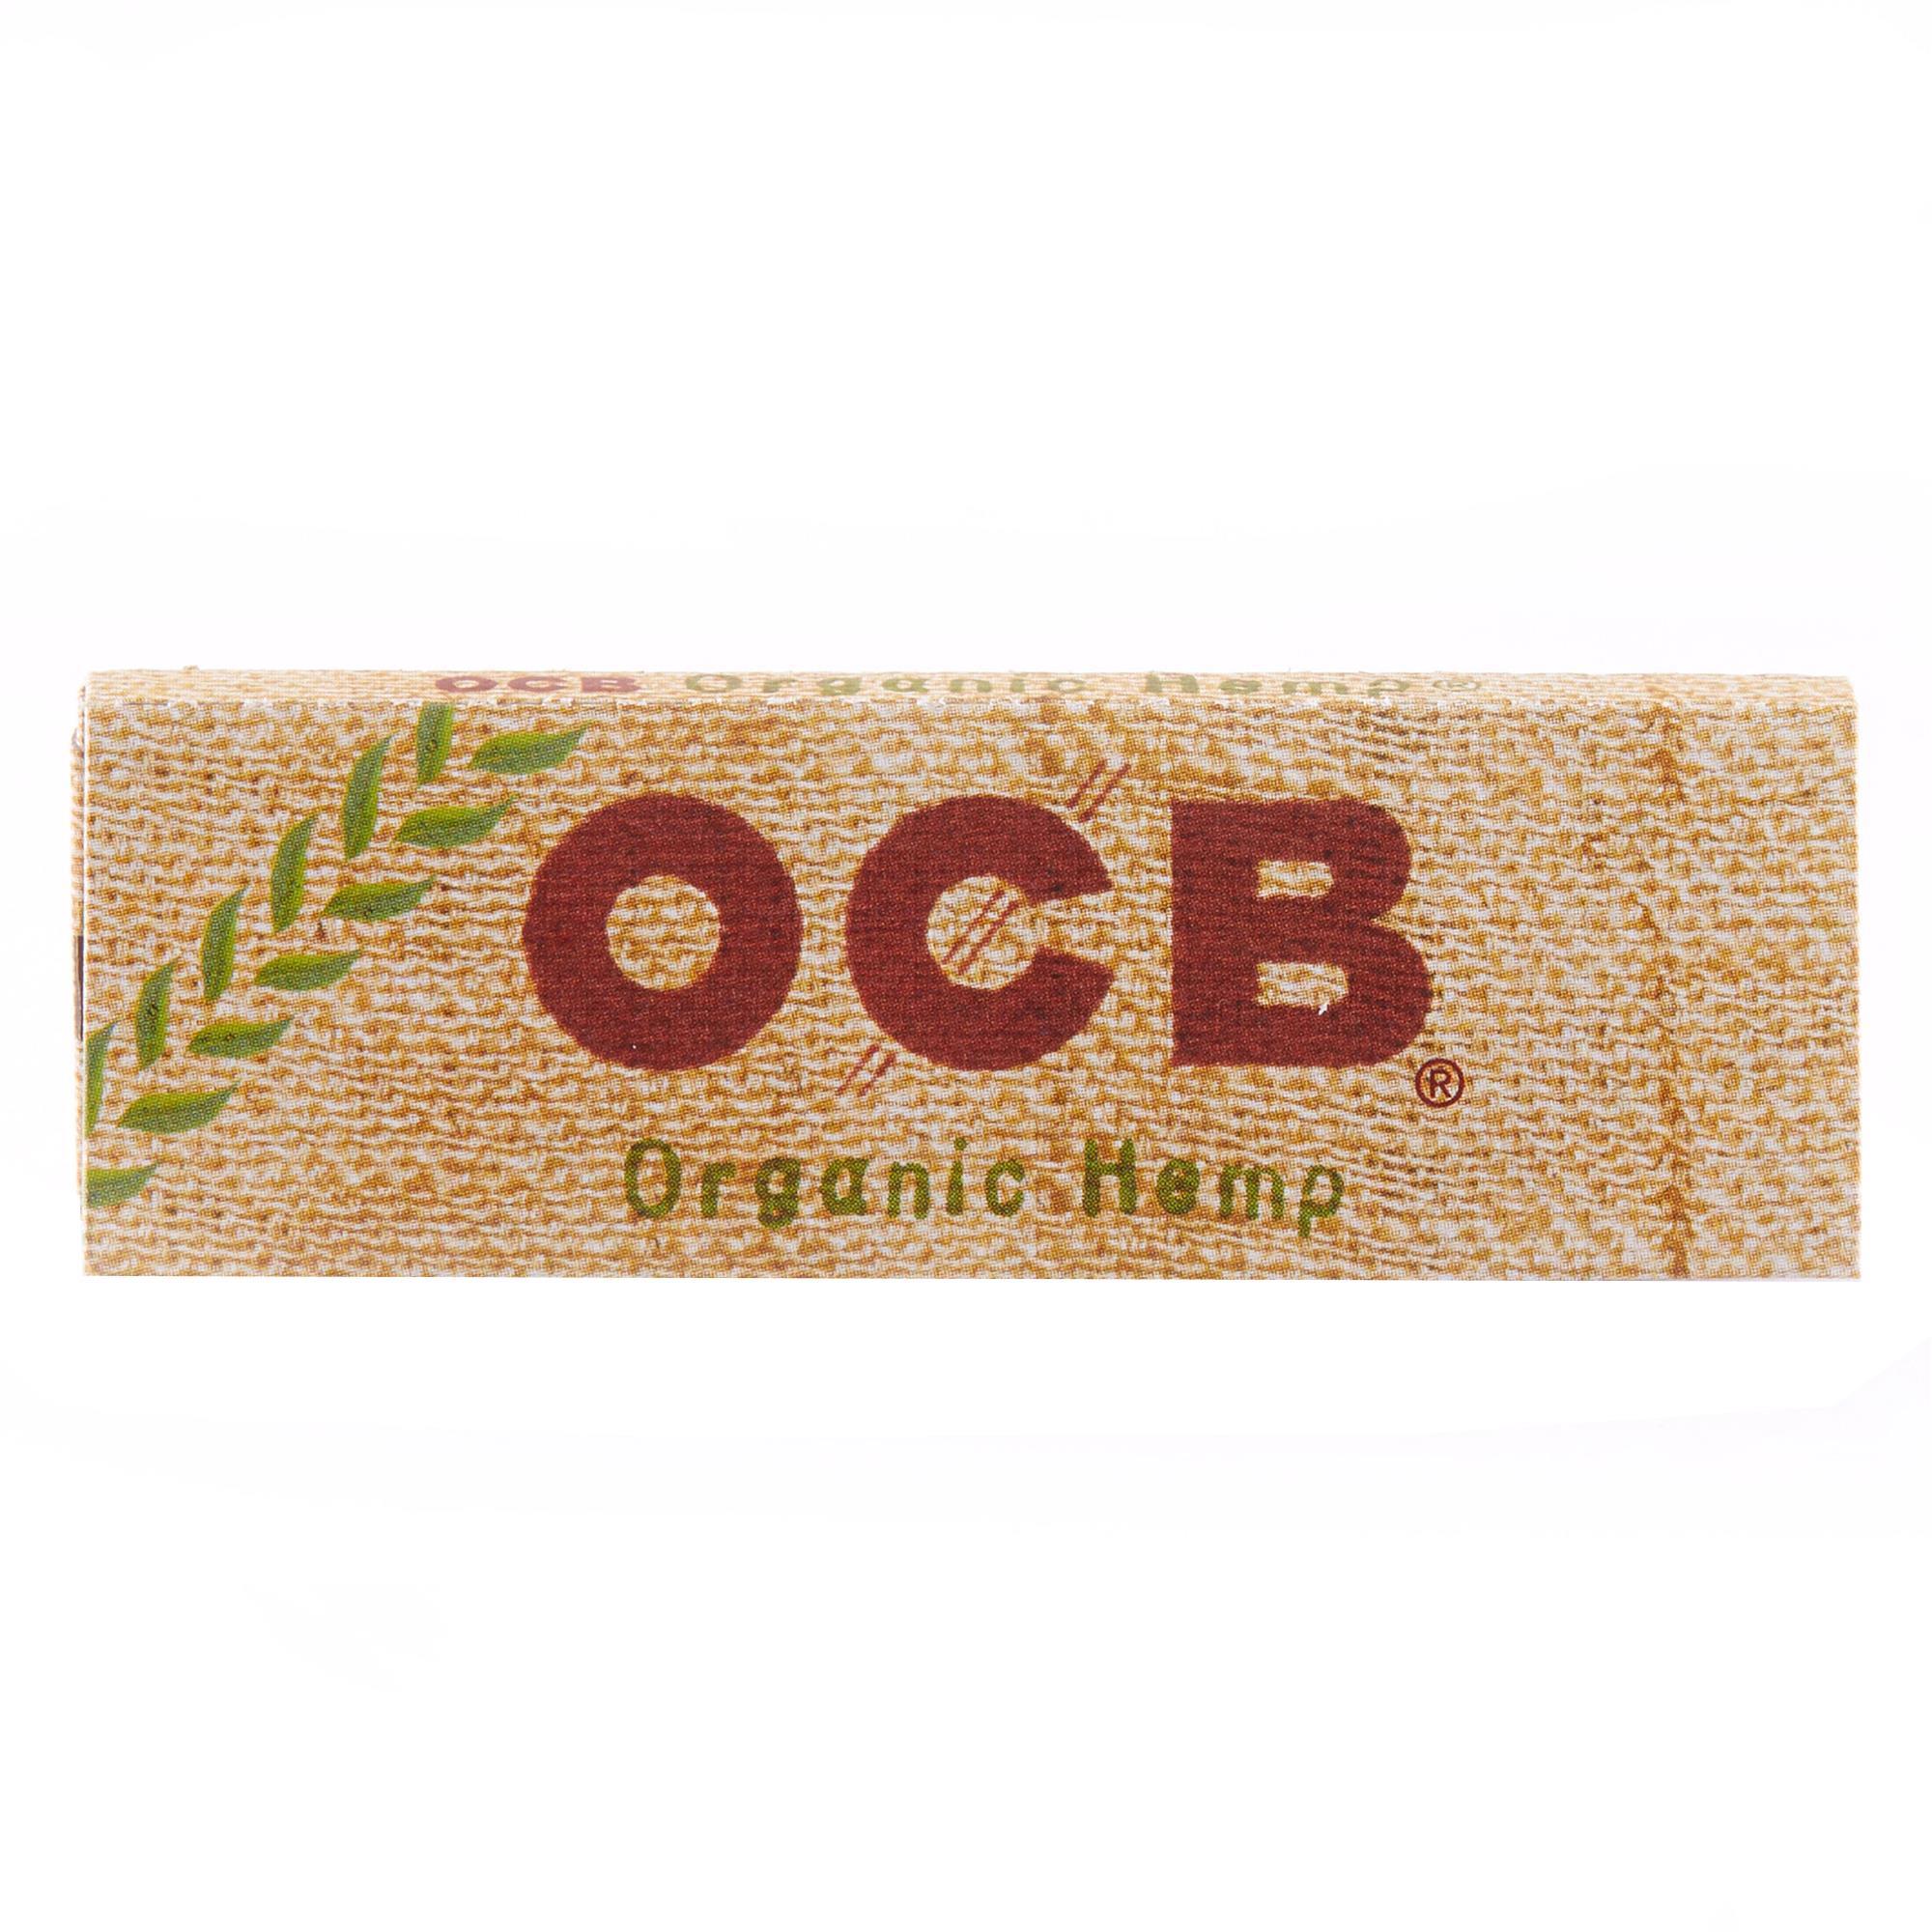 OCB ORGANIC HEMP